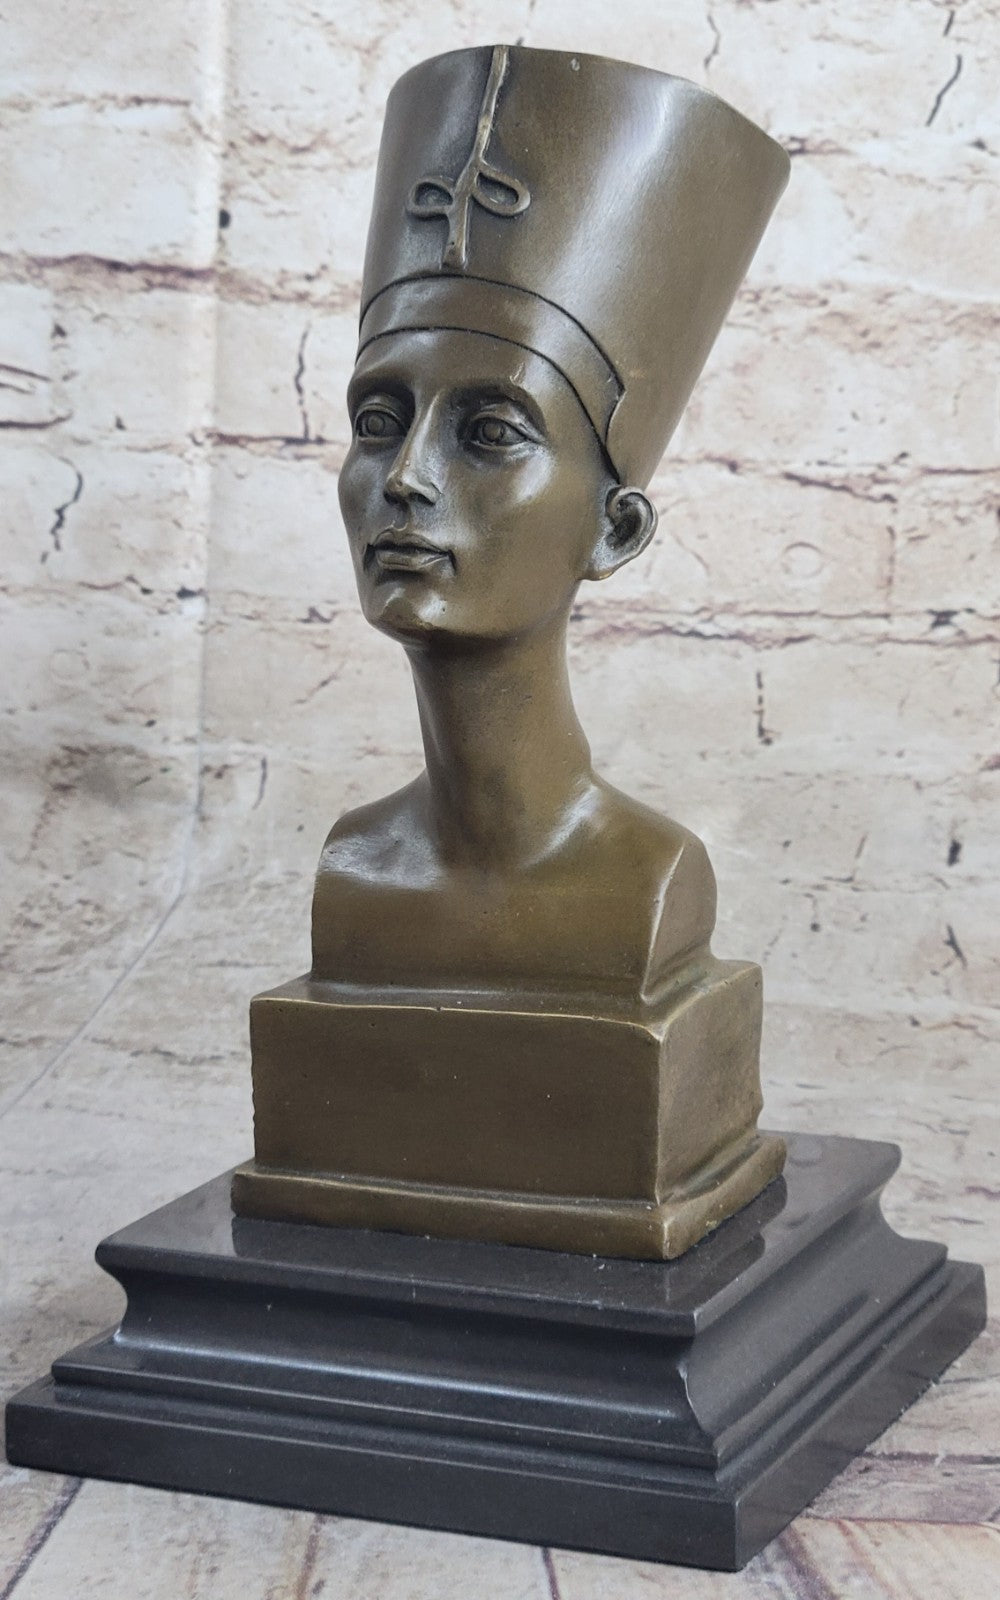 Hot Cast European Made Nefertiti Bust Bronze Masterpiece Sculpture Figurine Sale